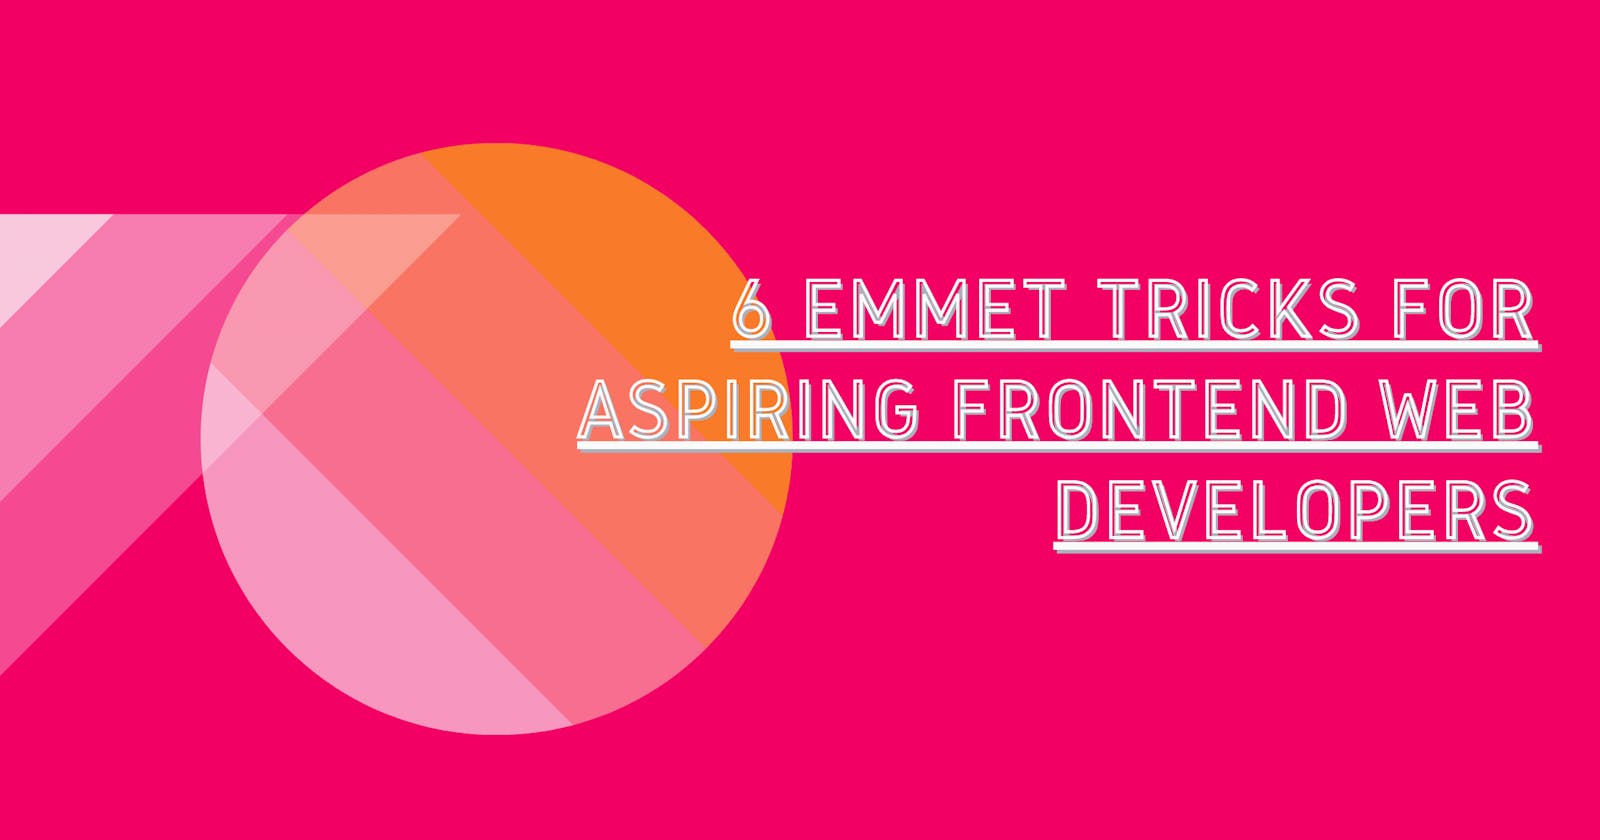 6 Emmet Tricks For Aspiring Frontend Web Developers